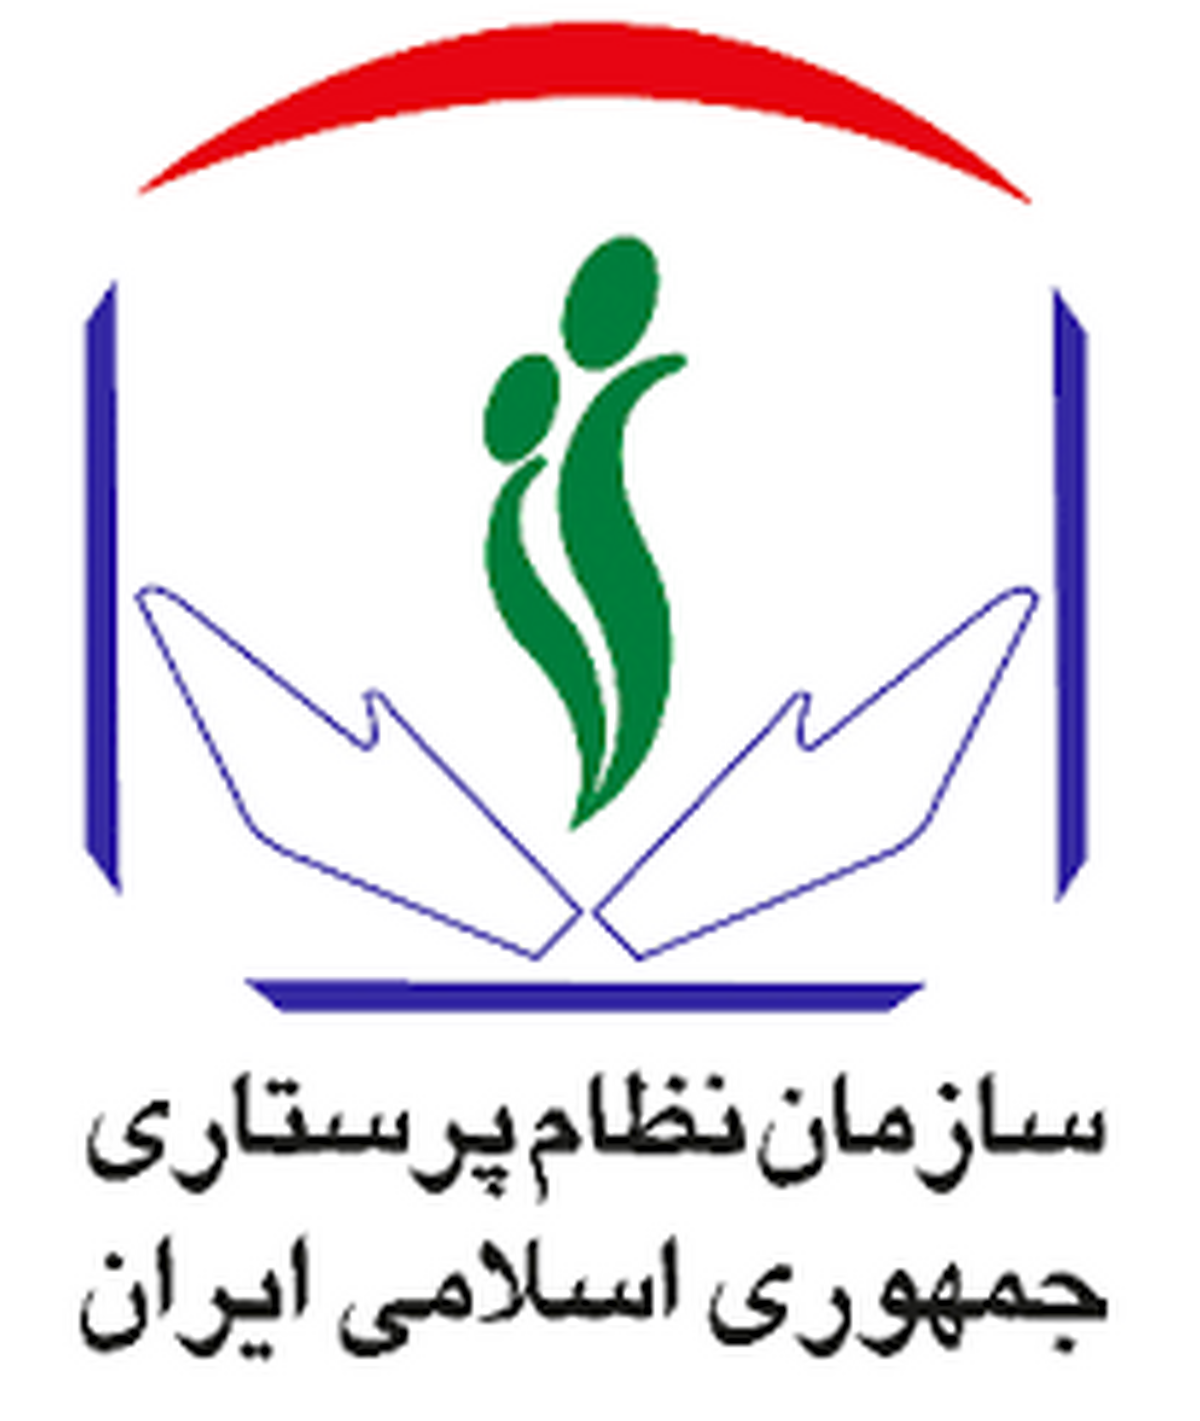 سازمان نظام پرستاری به لایحه پیشنهادی وزارت بهداشت واکنش نشان داد